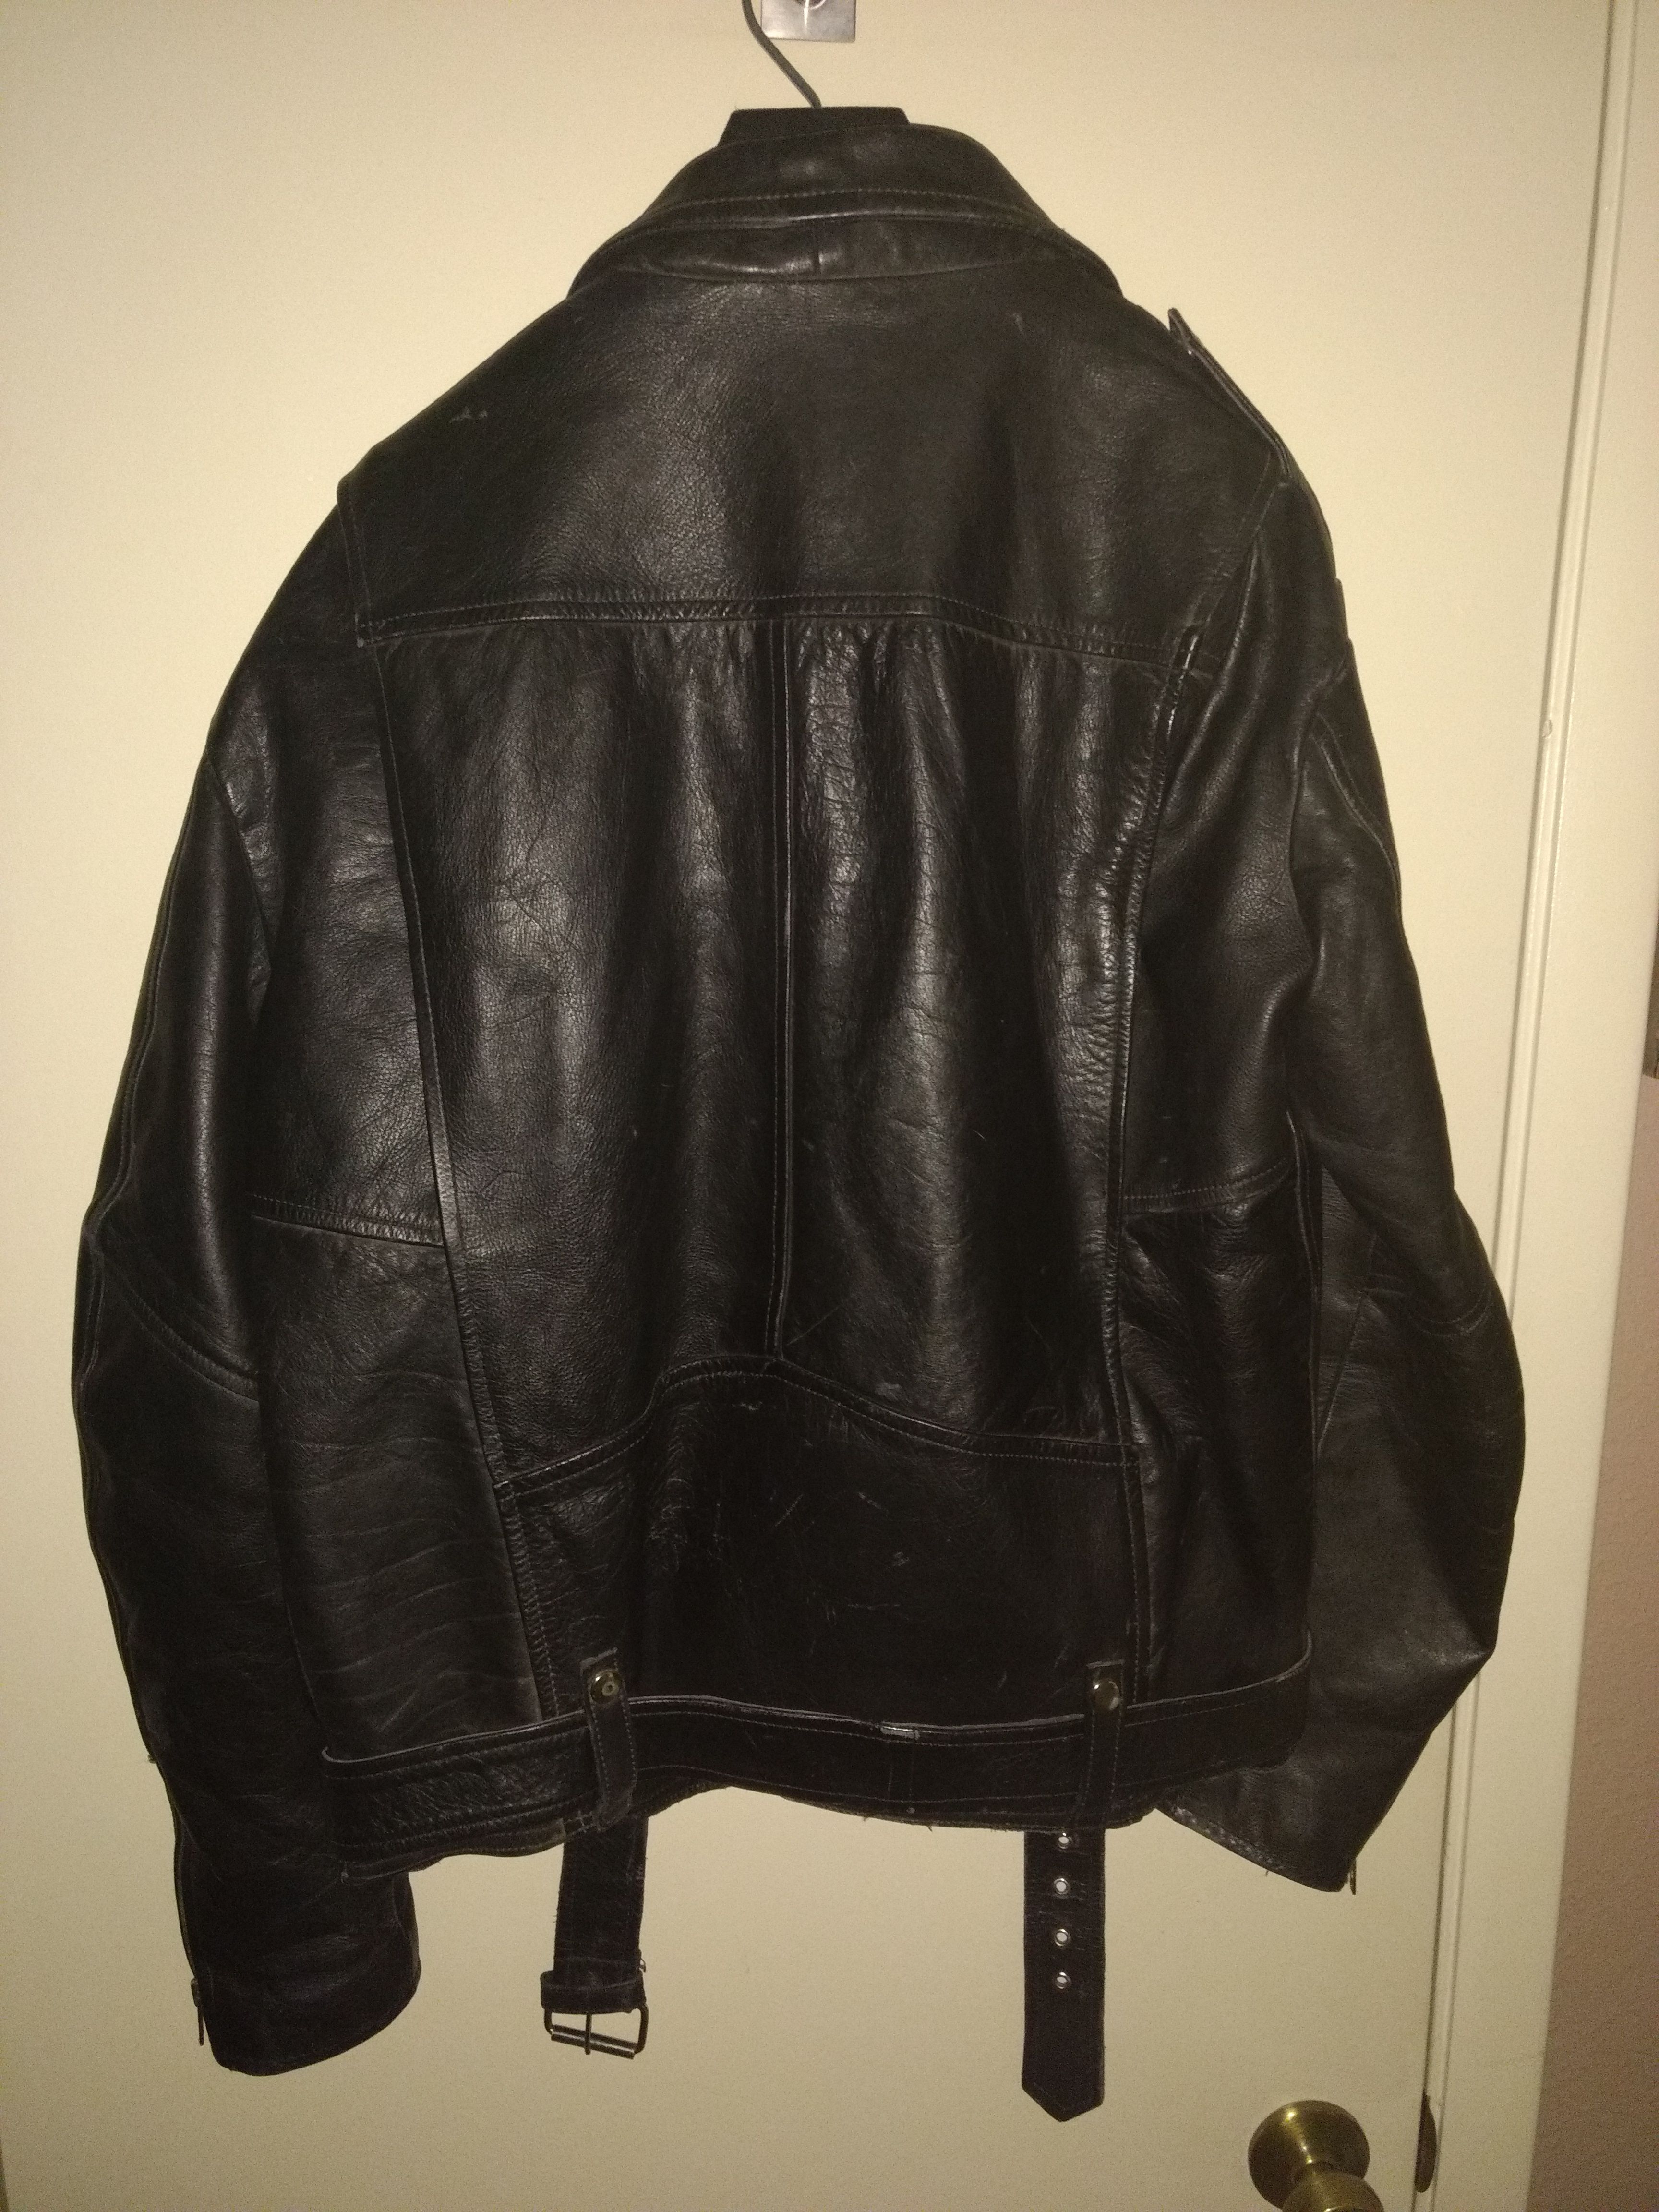 Wheels of Man vintage biker leather jacket for Sale in Phoenix, AZ